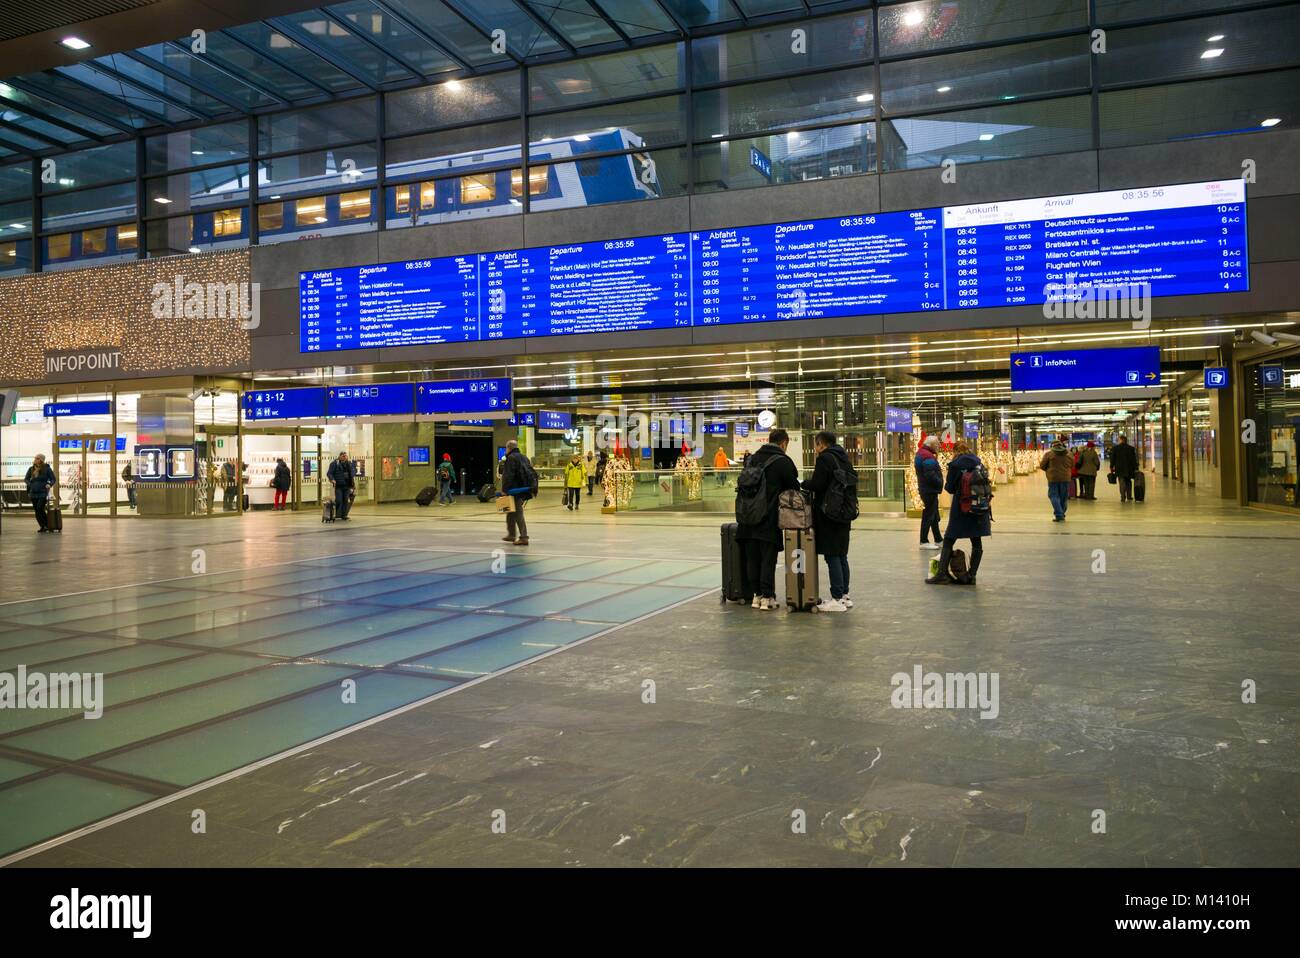 Austria, Vienna, Wein Bahnhof, Vienna Central Station, interior Stock Photo